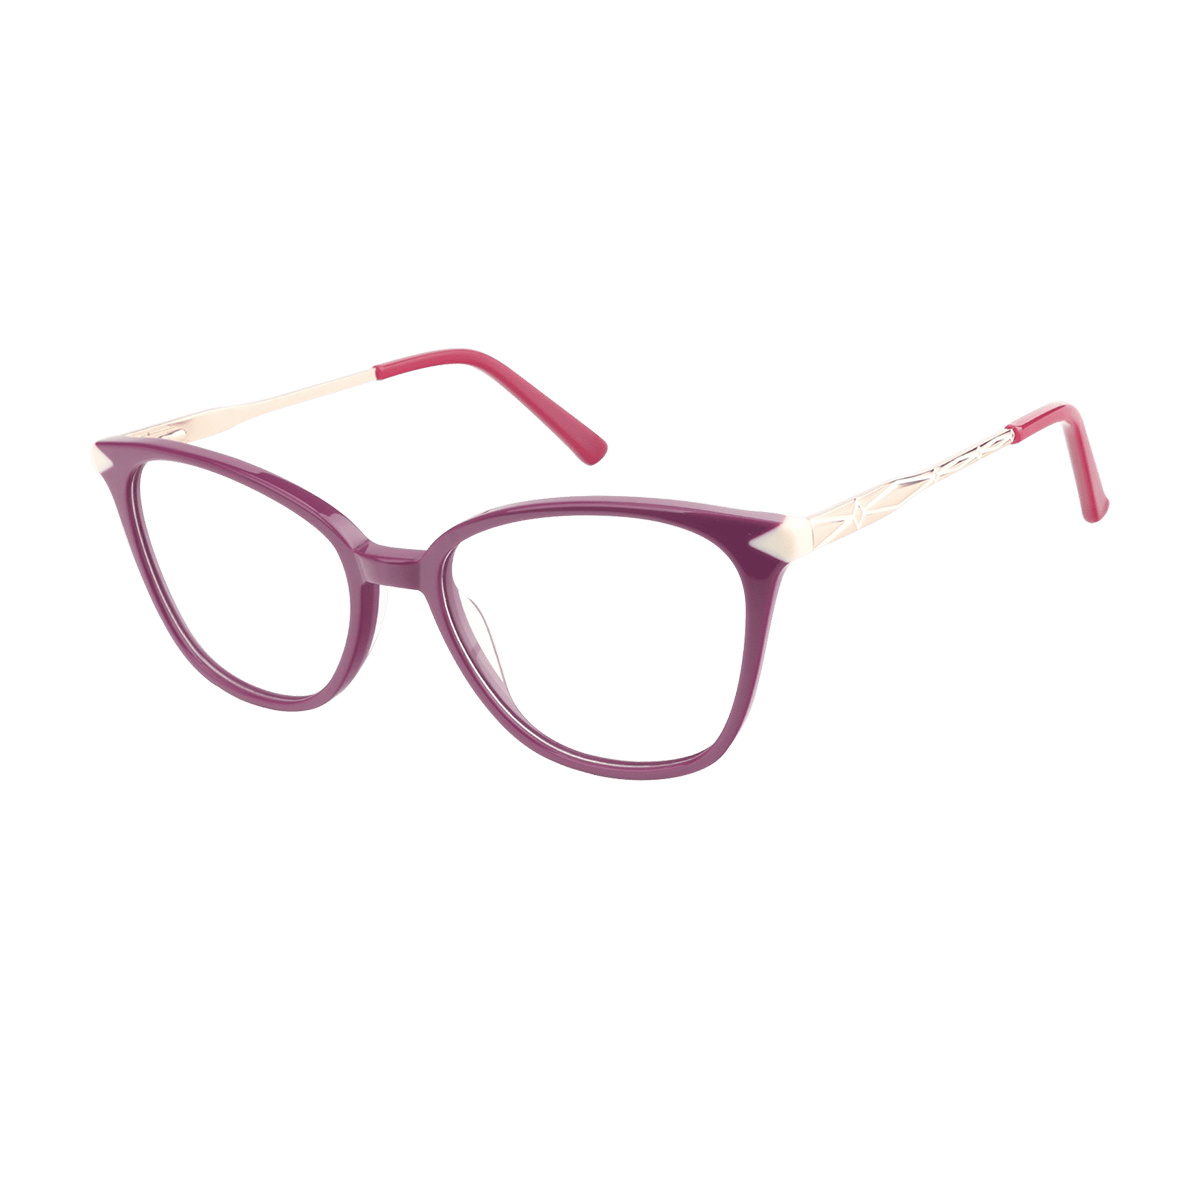 Asteria - Square Purple Reading Glasses for Women